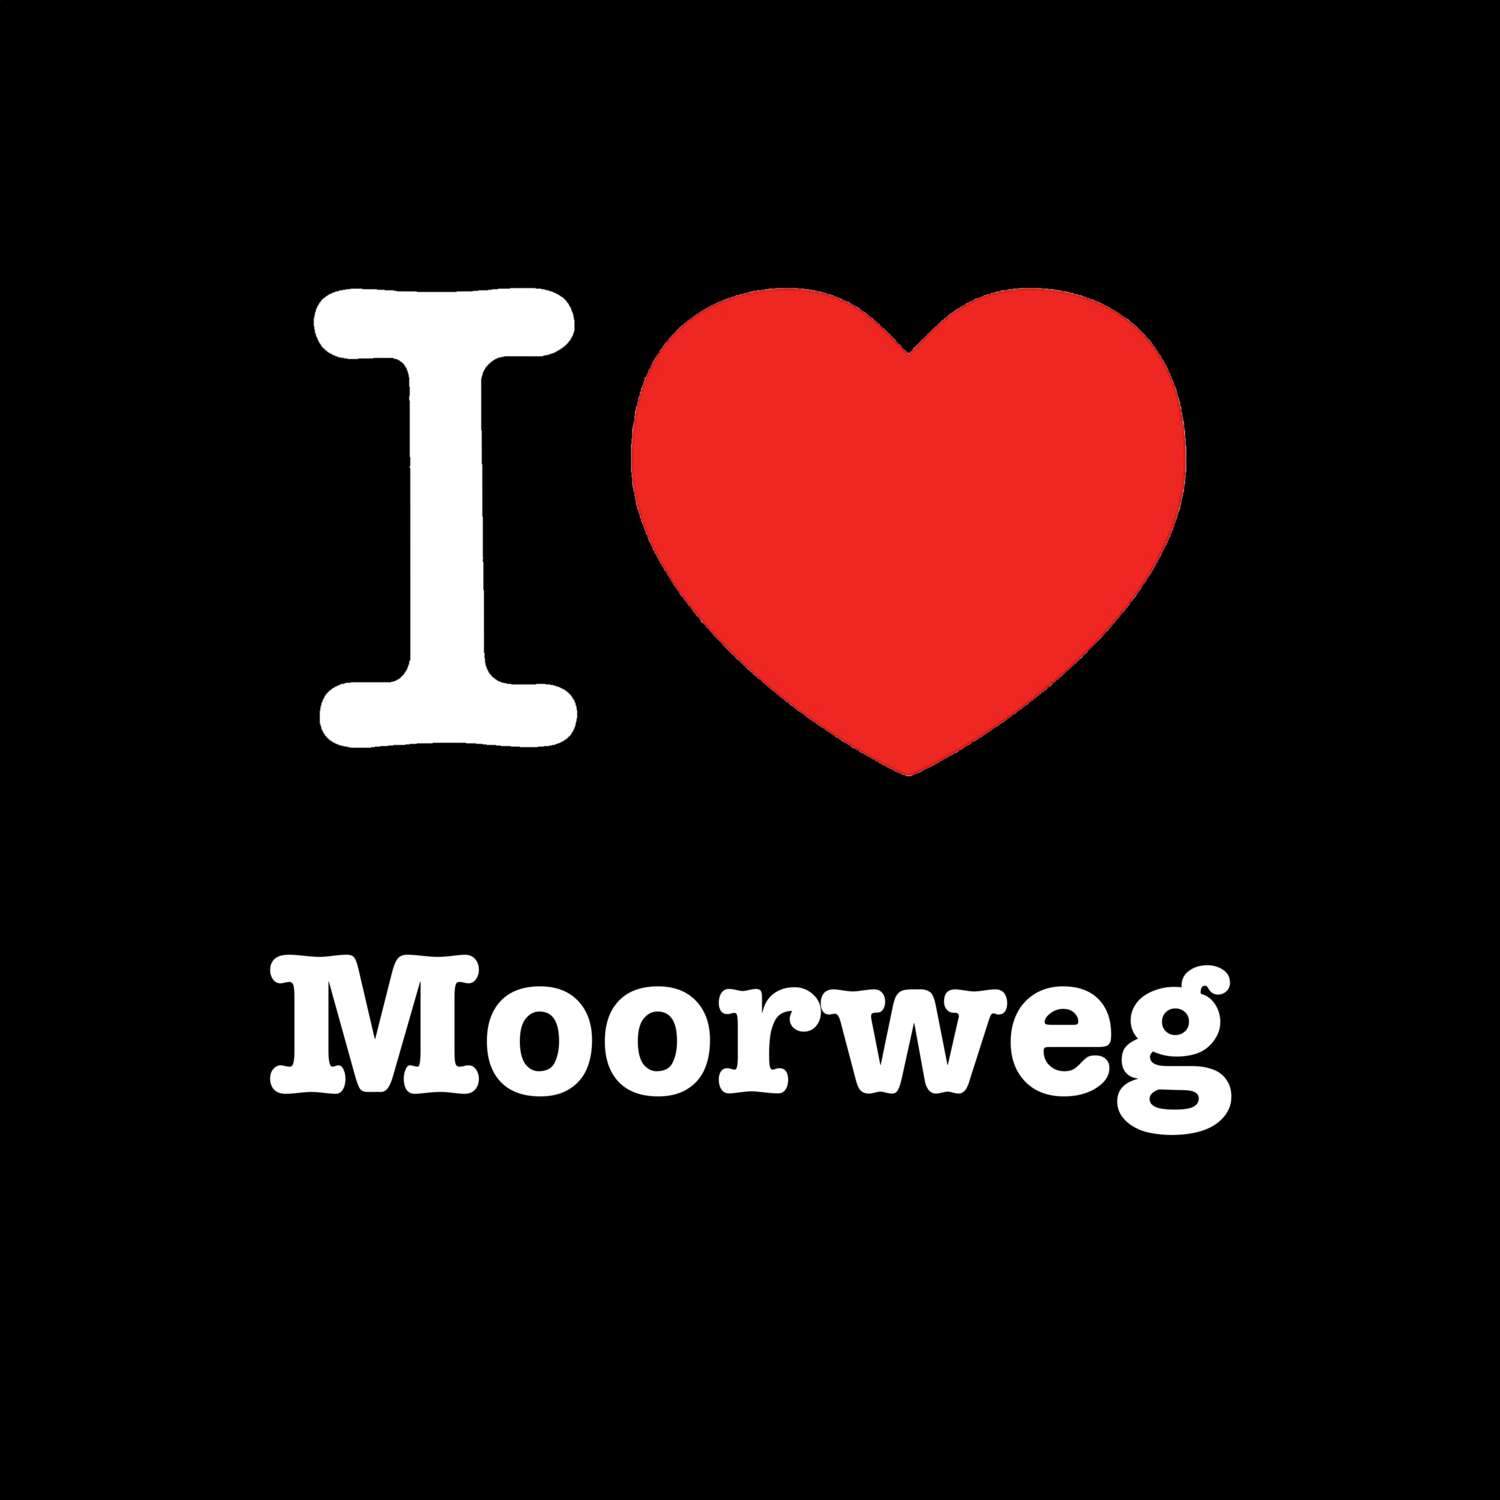 Moorweg T-Shirt »I love«